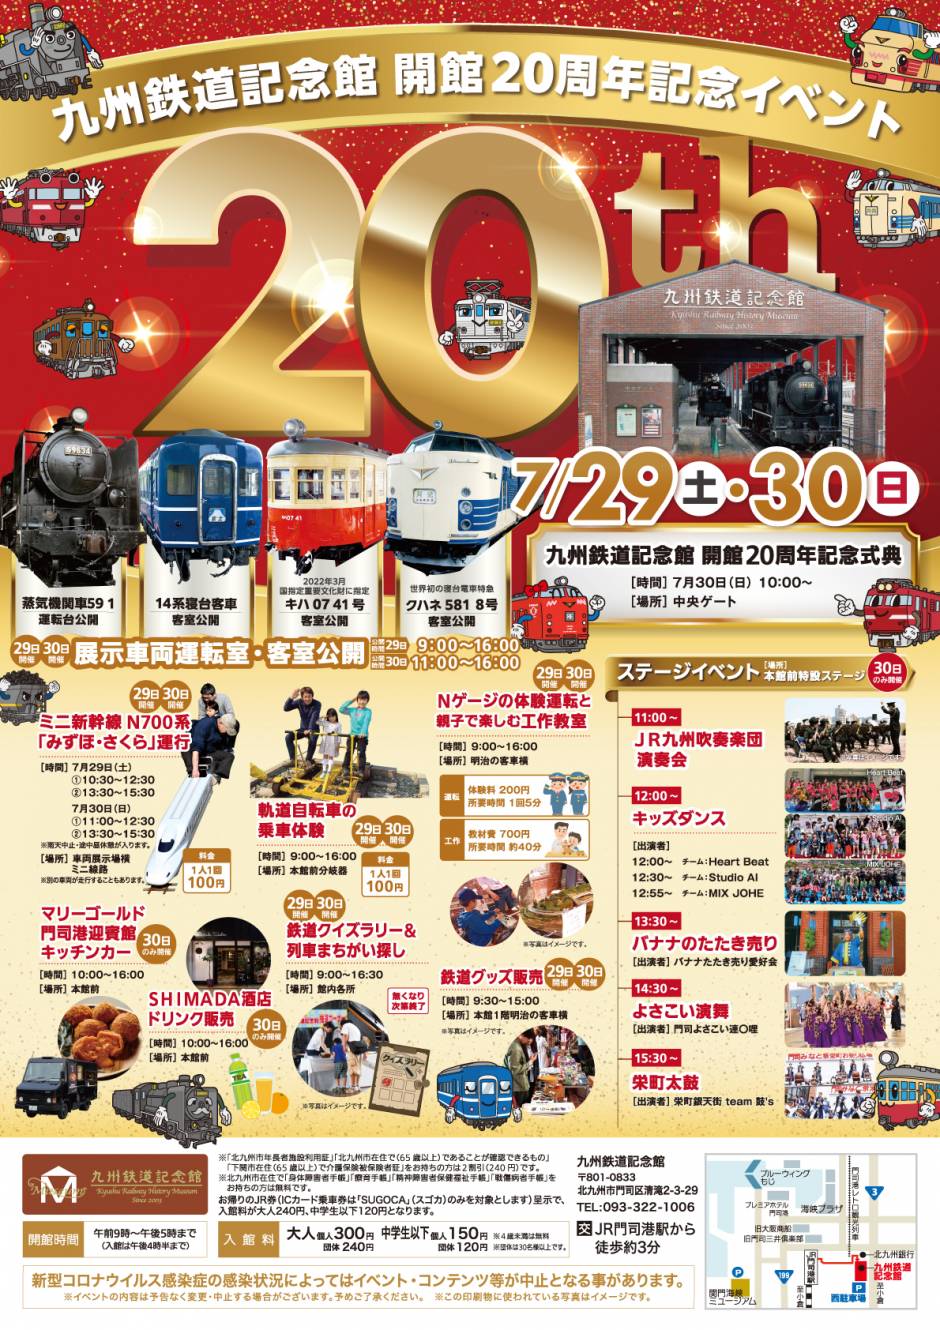 「九州鉄道記念館 開館20周年記念イベント」について